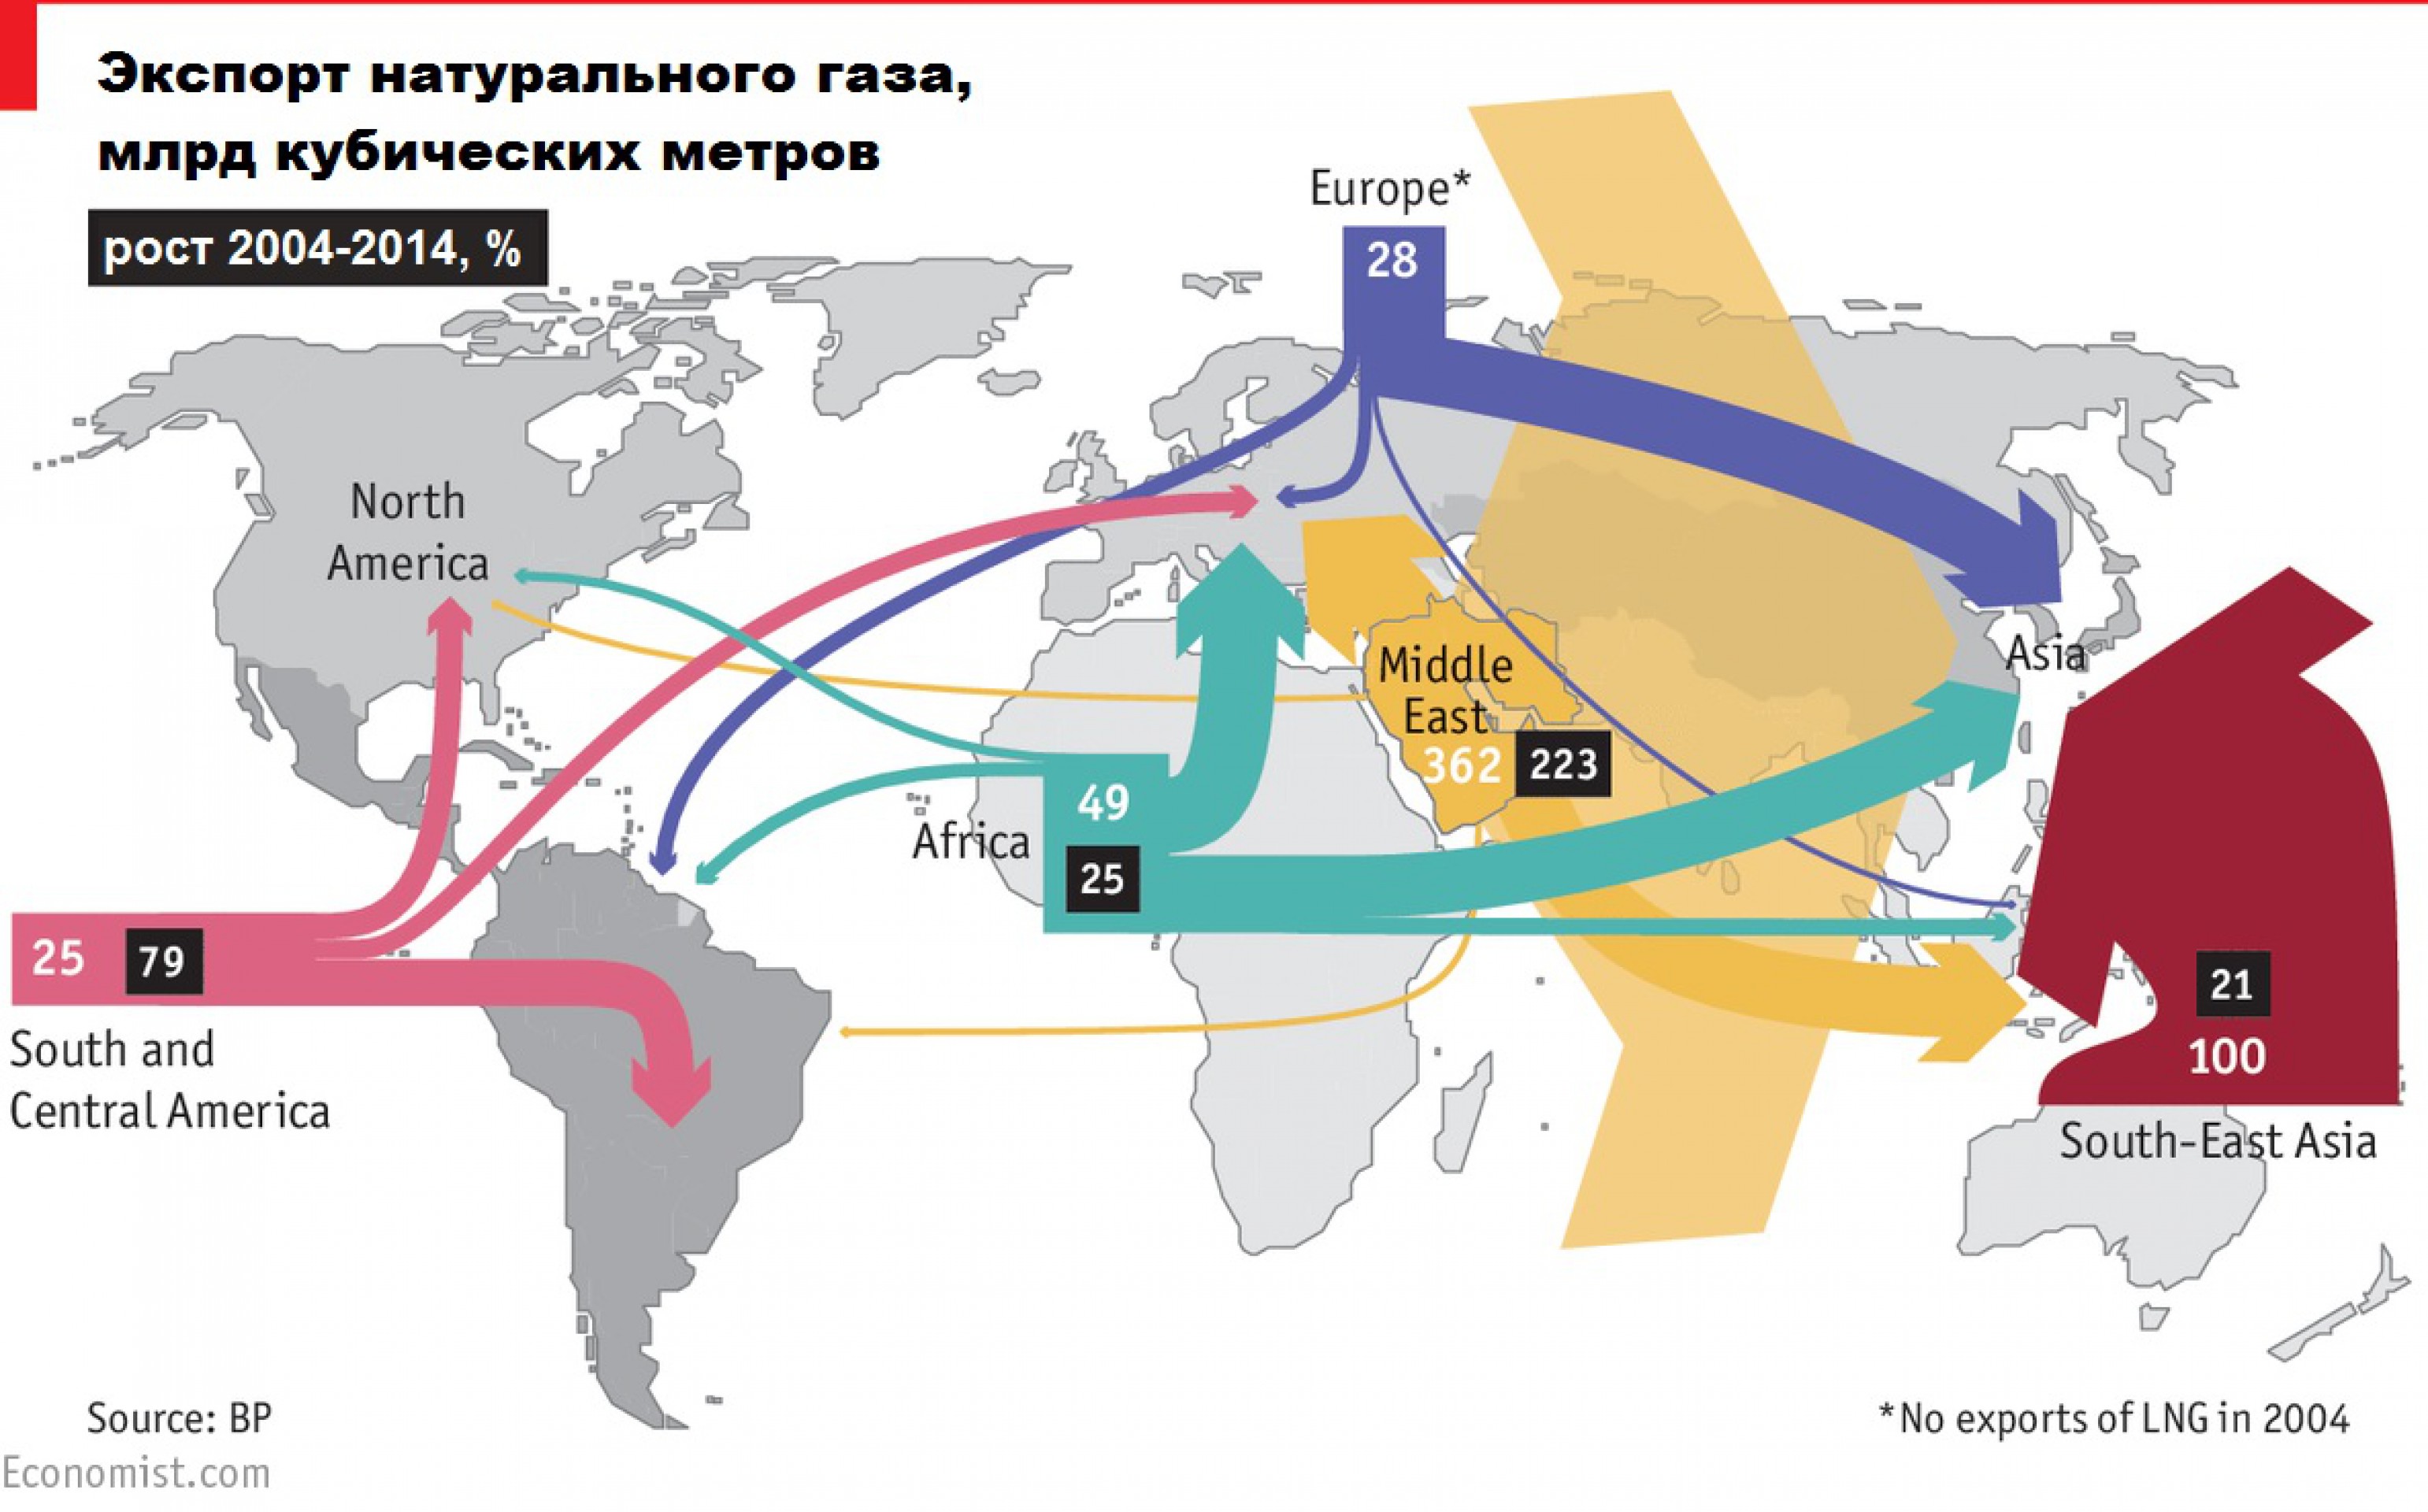 Экспортеры газа россии. Карта экспорта газа России. Экспорт сжиженного природного газа. Экспорт газа в мире карта. Направления экспорта газа.